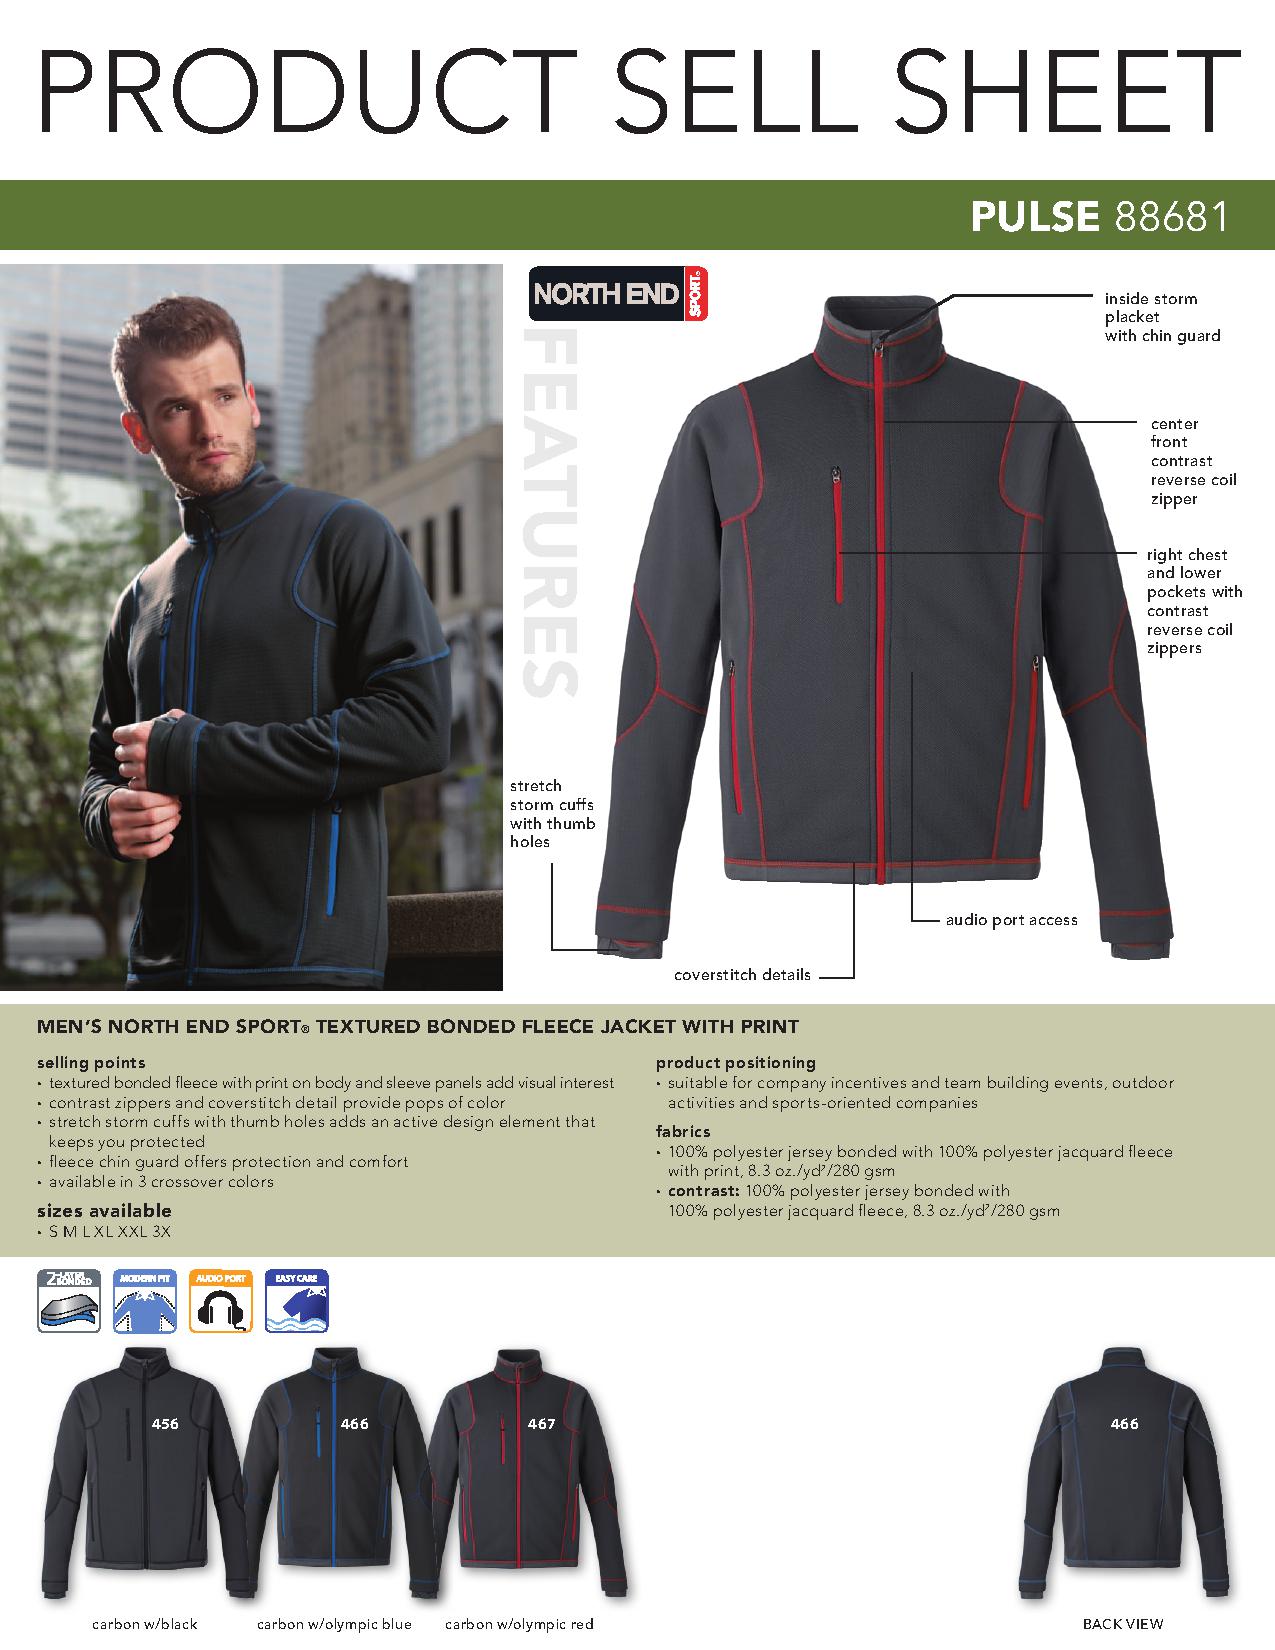 Ash City Bonded Fleece 88681 - Pulse Men's Textured Bonded Fleece Jacket With Print